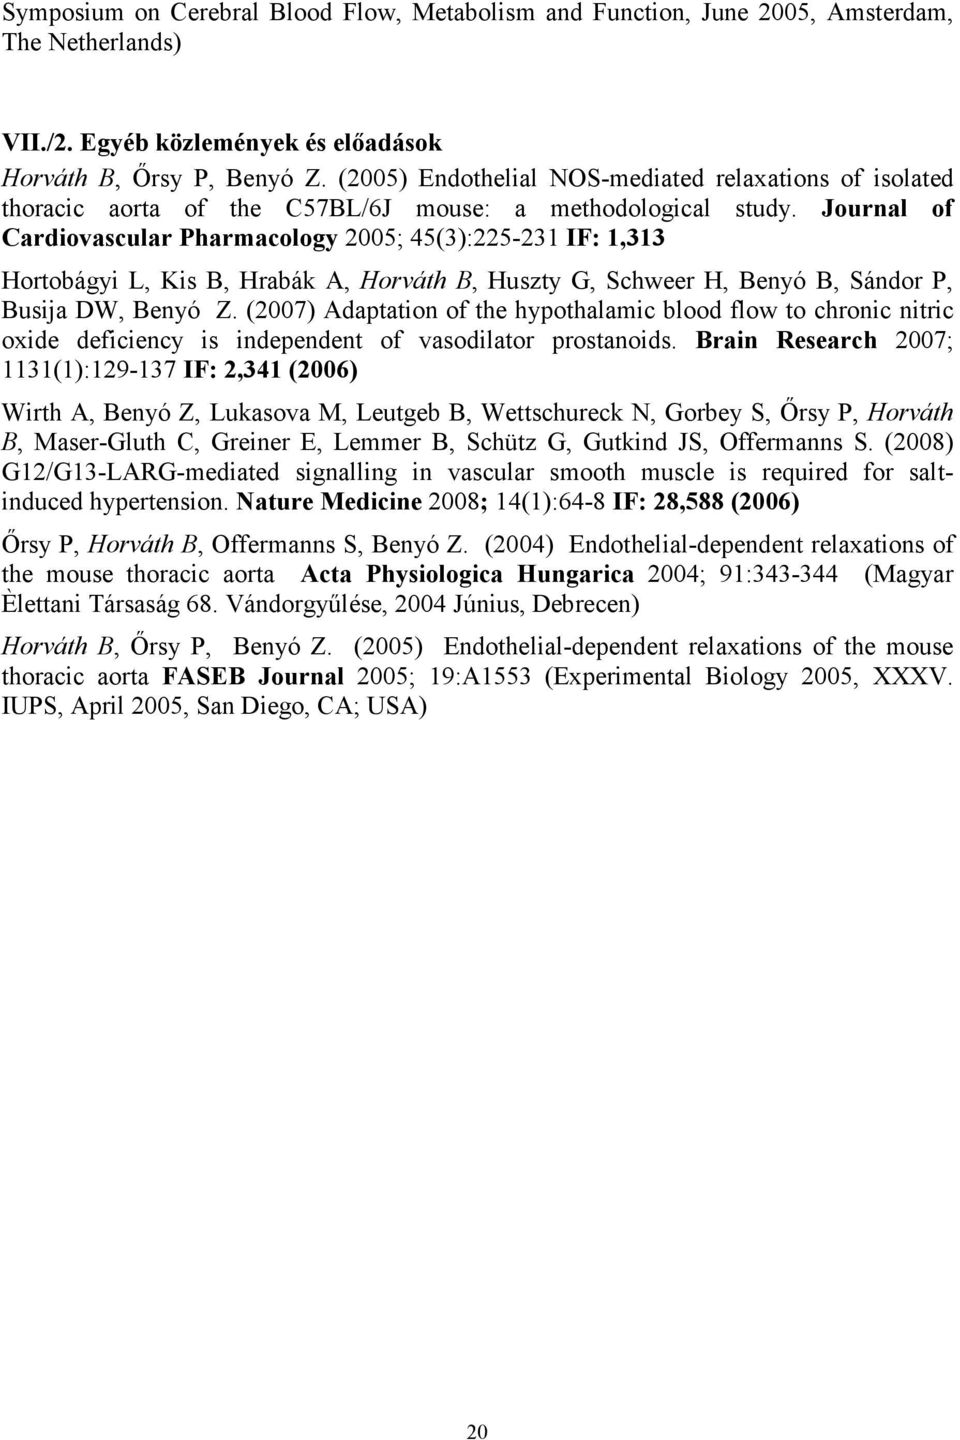 Journal of Cardiovascular Pharmacology 2005; 45(3):225-231 IF: 1,313 Hortobágyi L, Kis B, Hrabák A, Horváth B, Huszty G, Schweer H, Benyó B, Sándor P, Busija DW, Benyó Z.